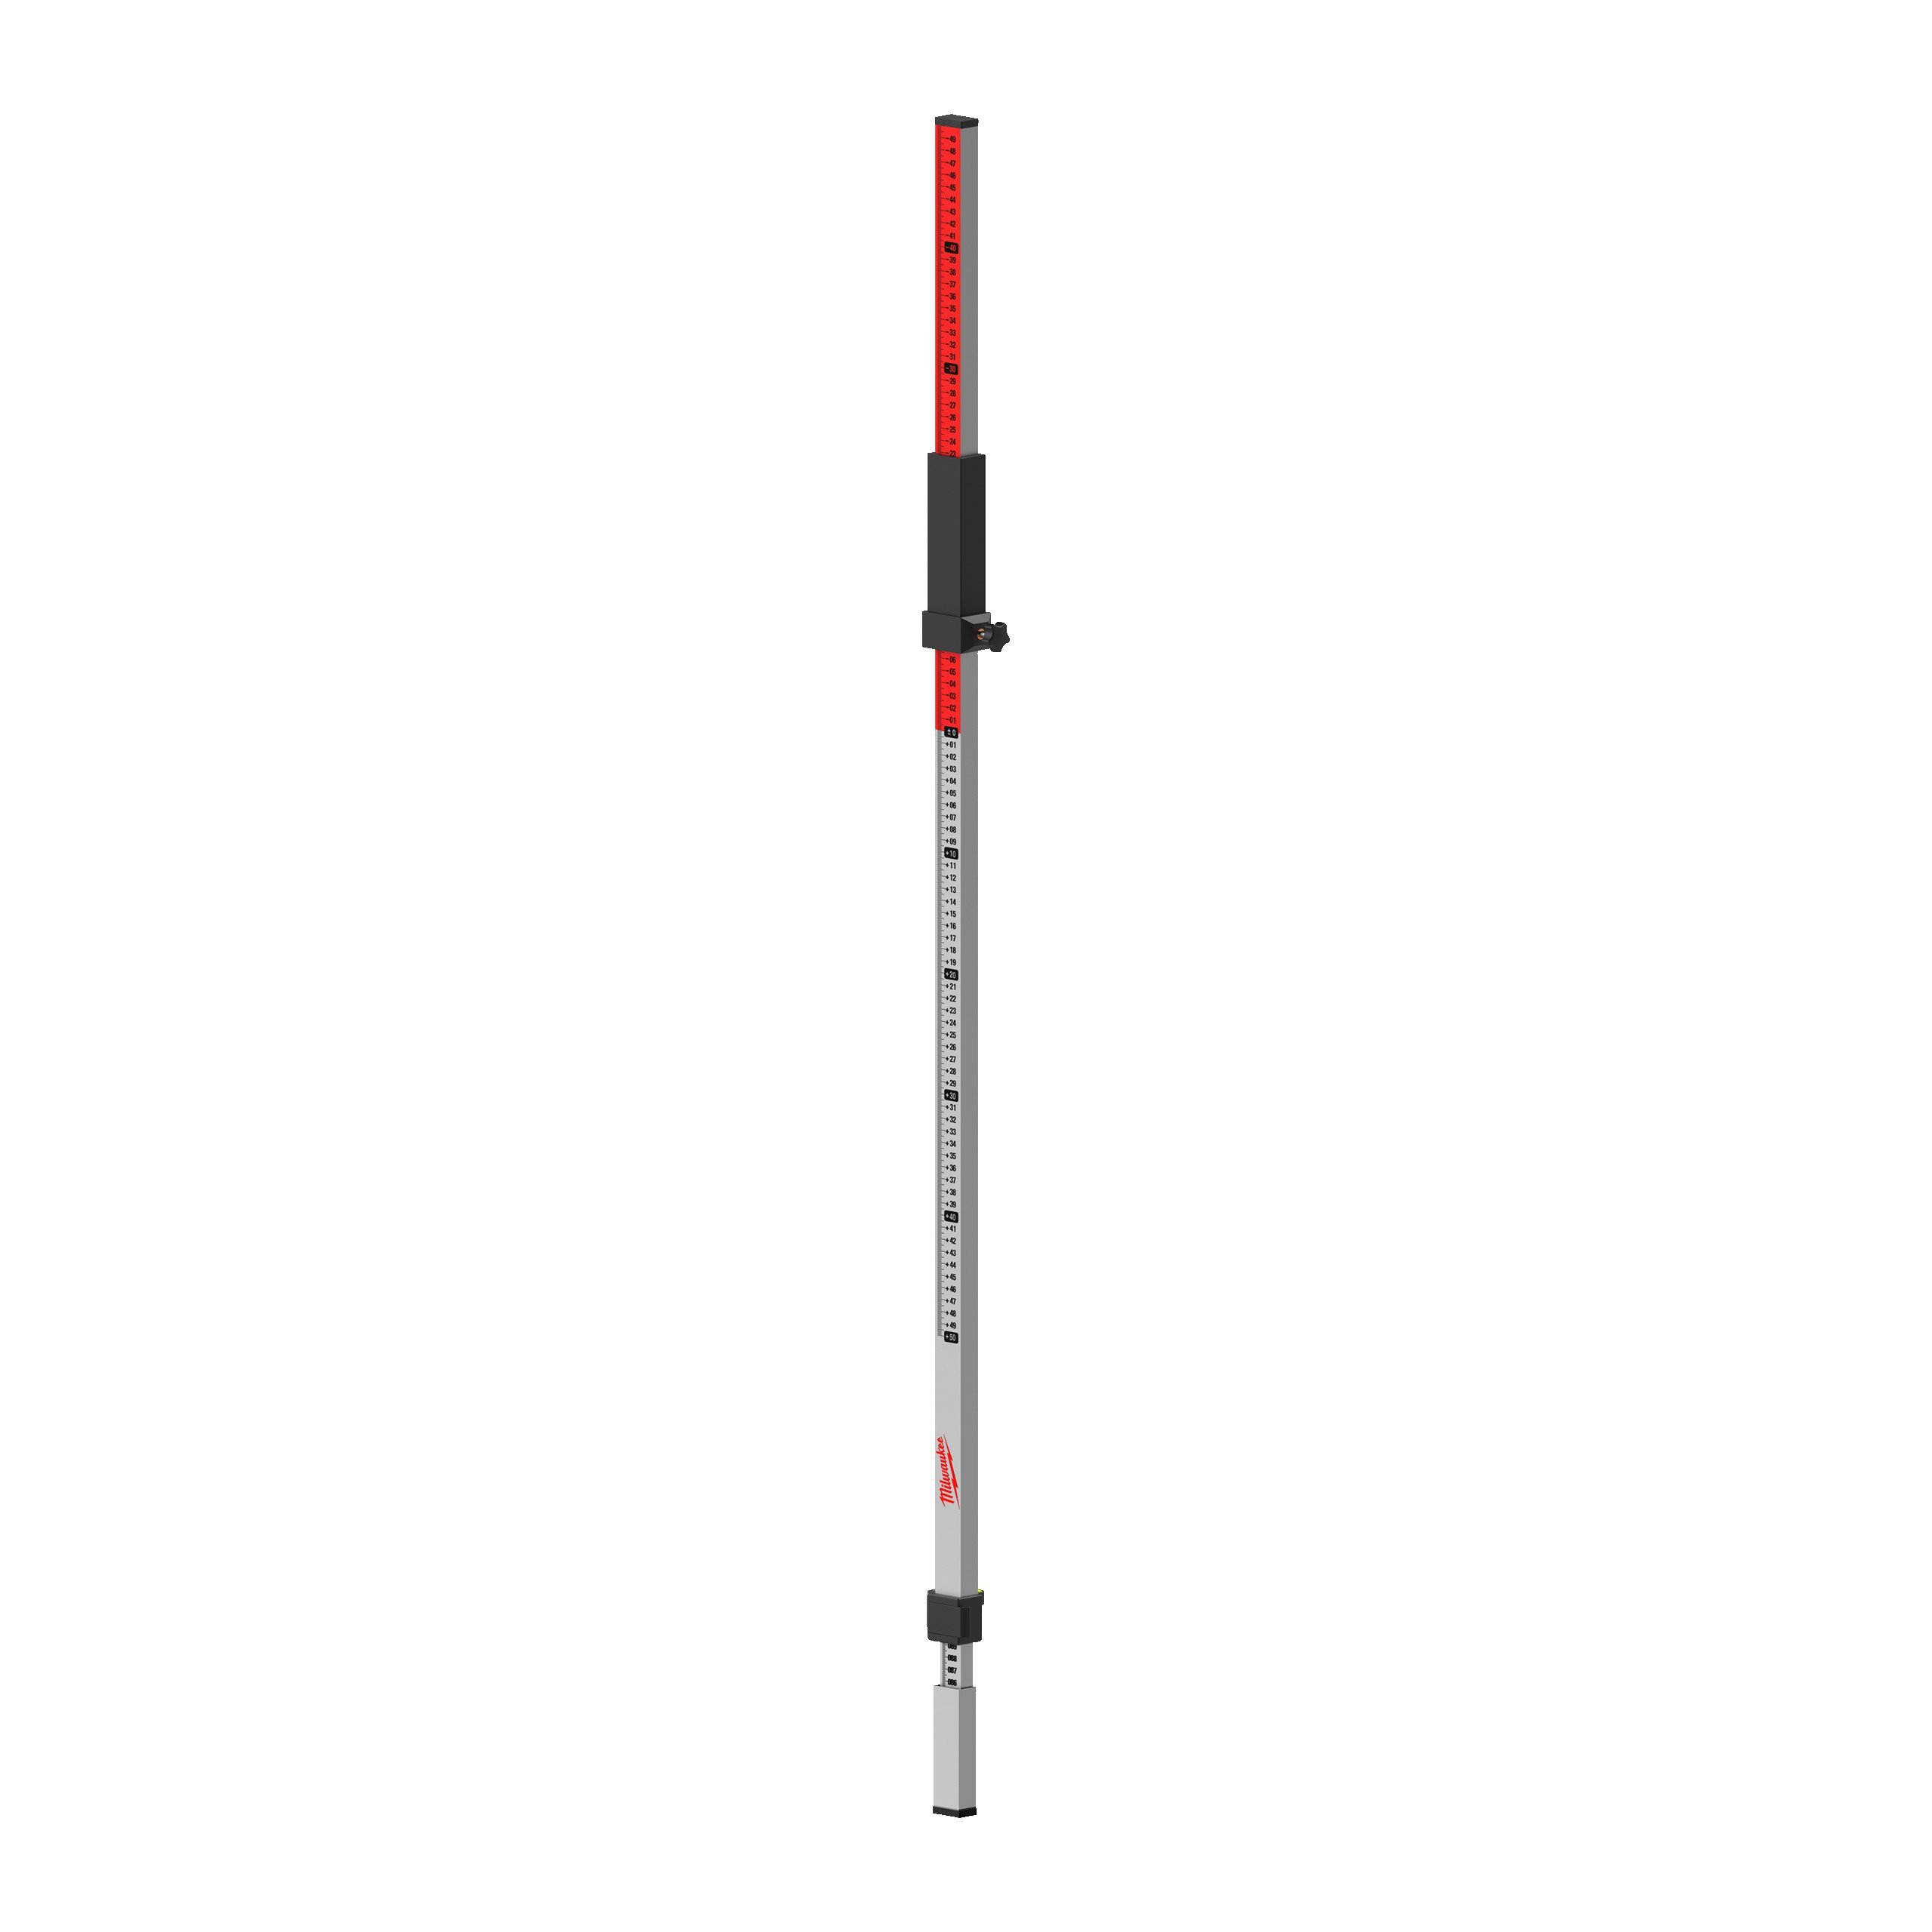 240 cm staff rod